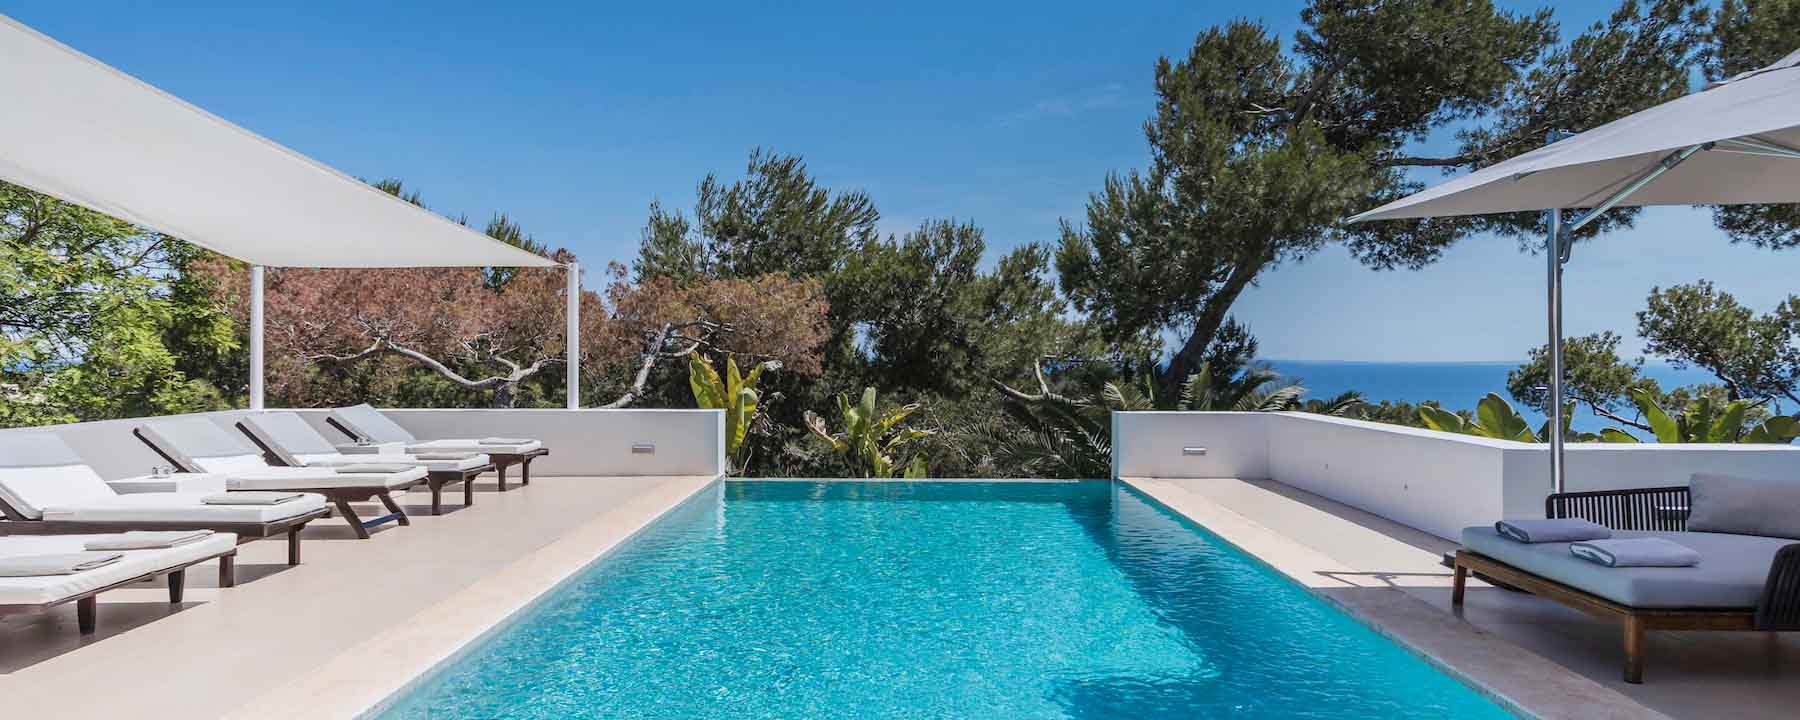 Moderne Villa Auf Ibiza Mieten 1